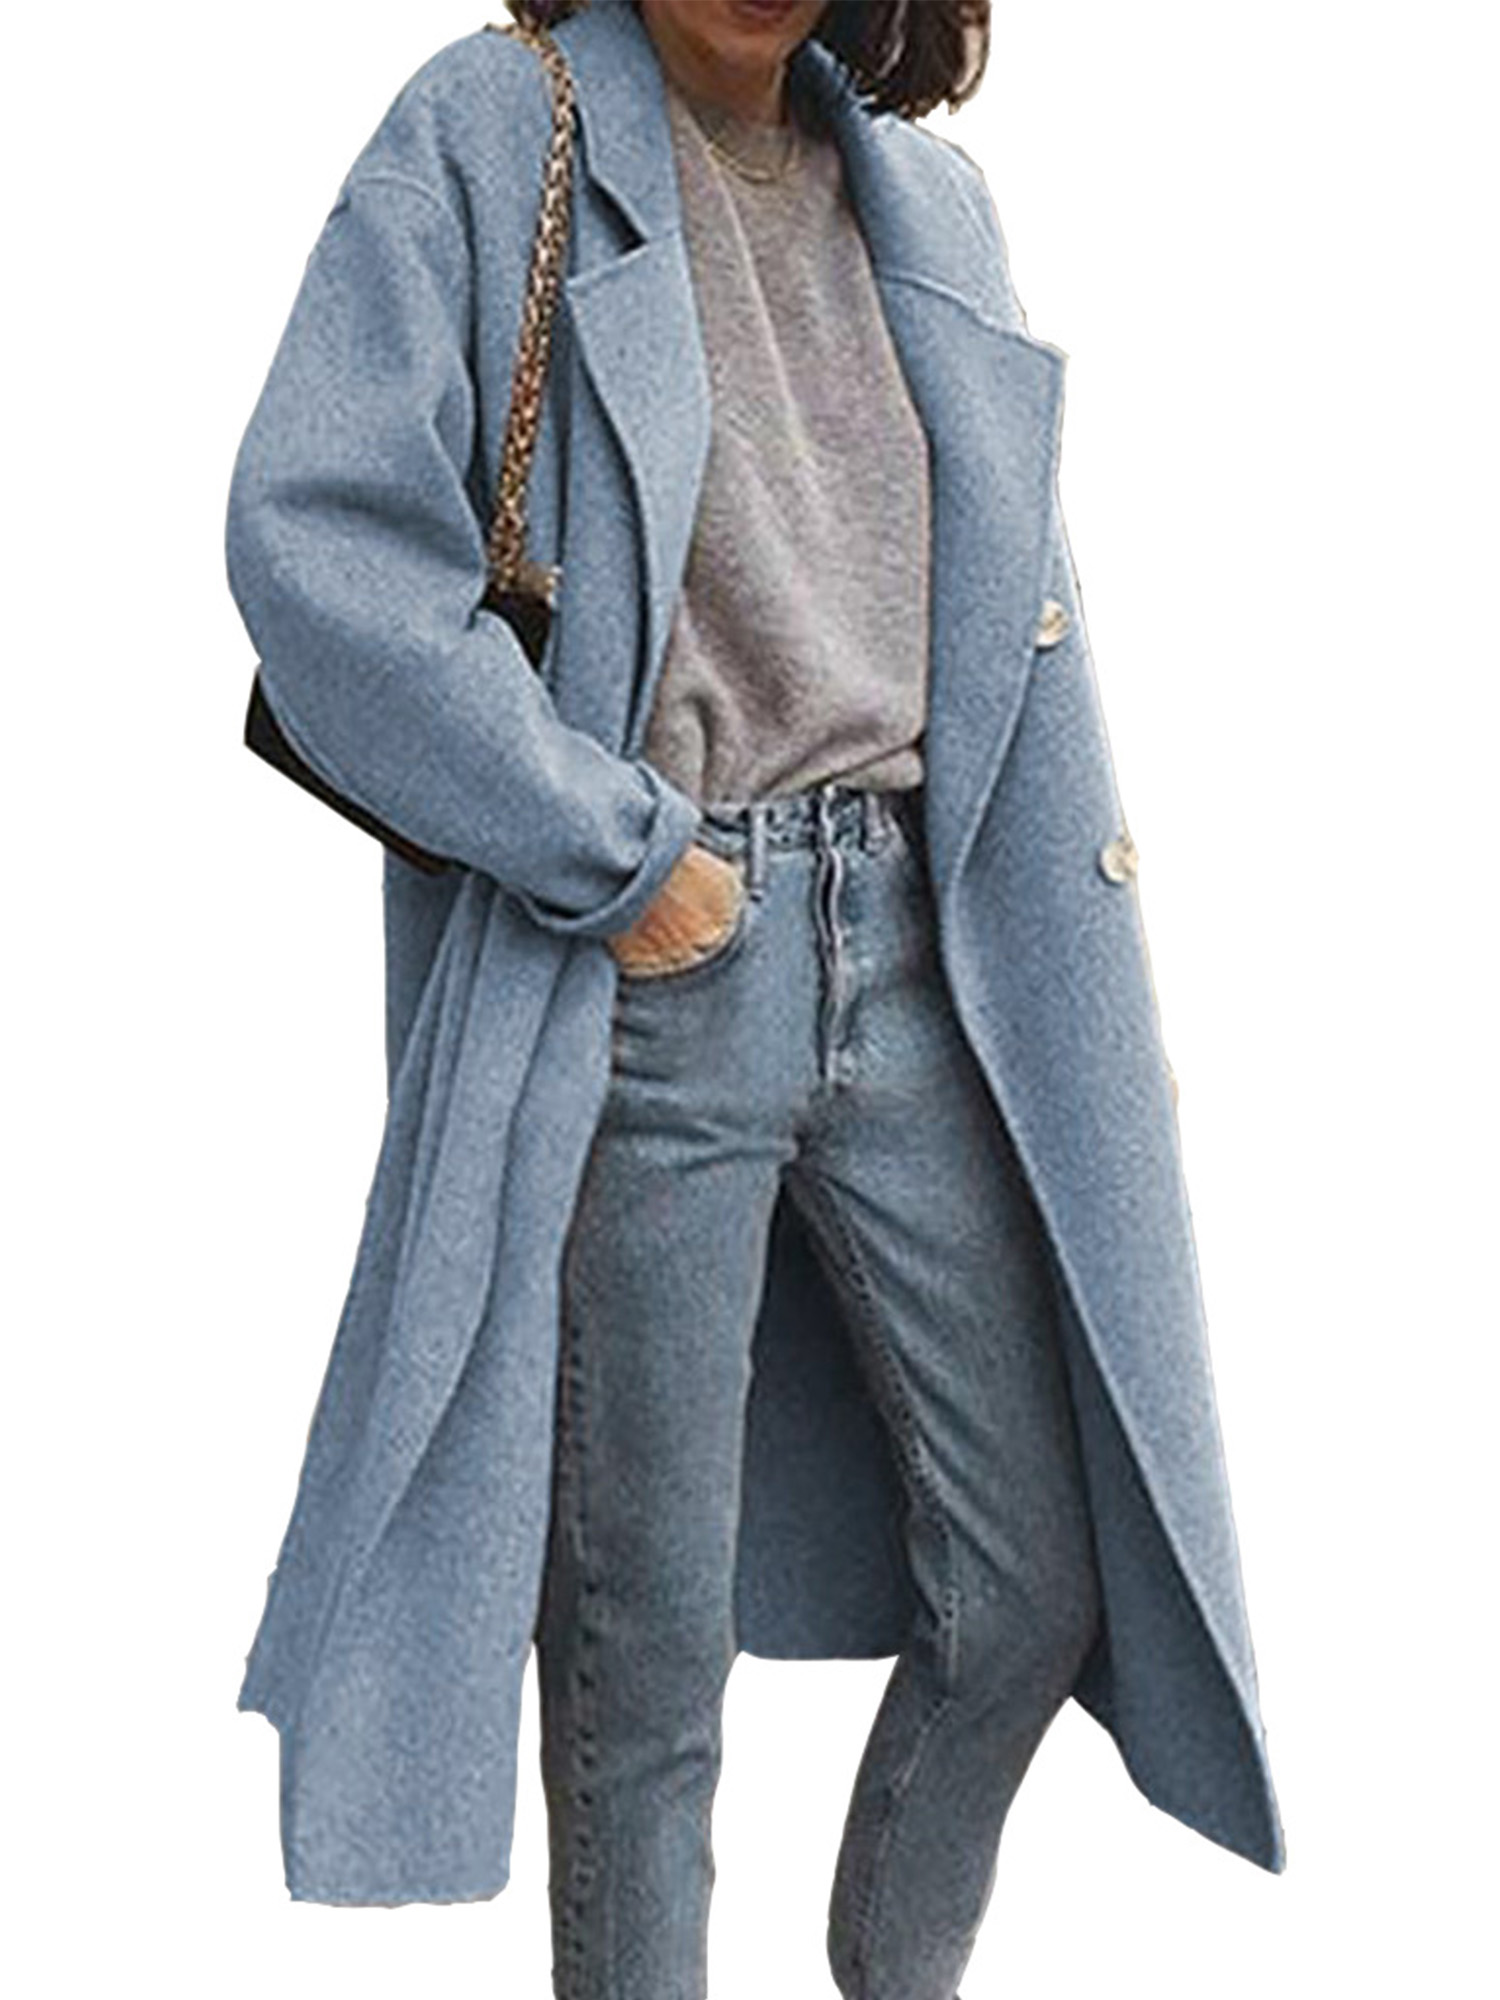 Cardigo Womens Winter Lapel Wool Coat Trench Jacket Long Sleeve Overcoat Outerwear